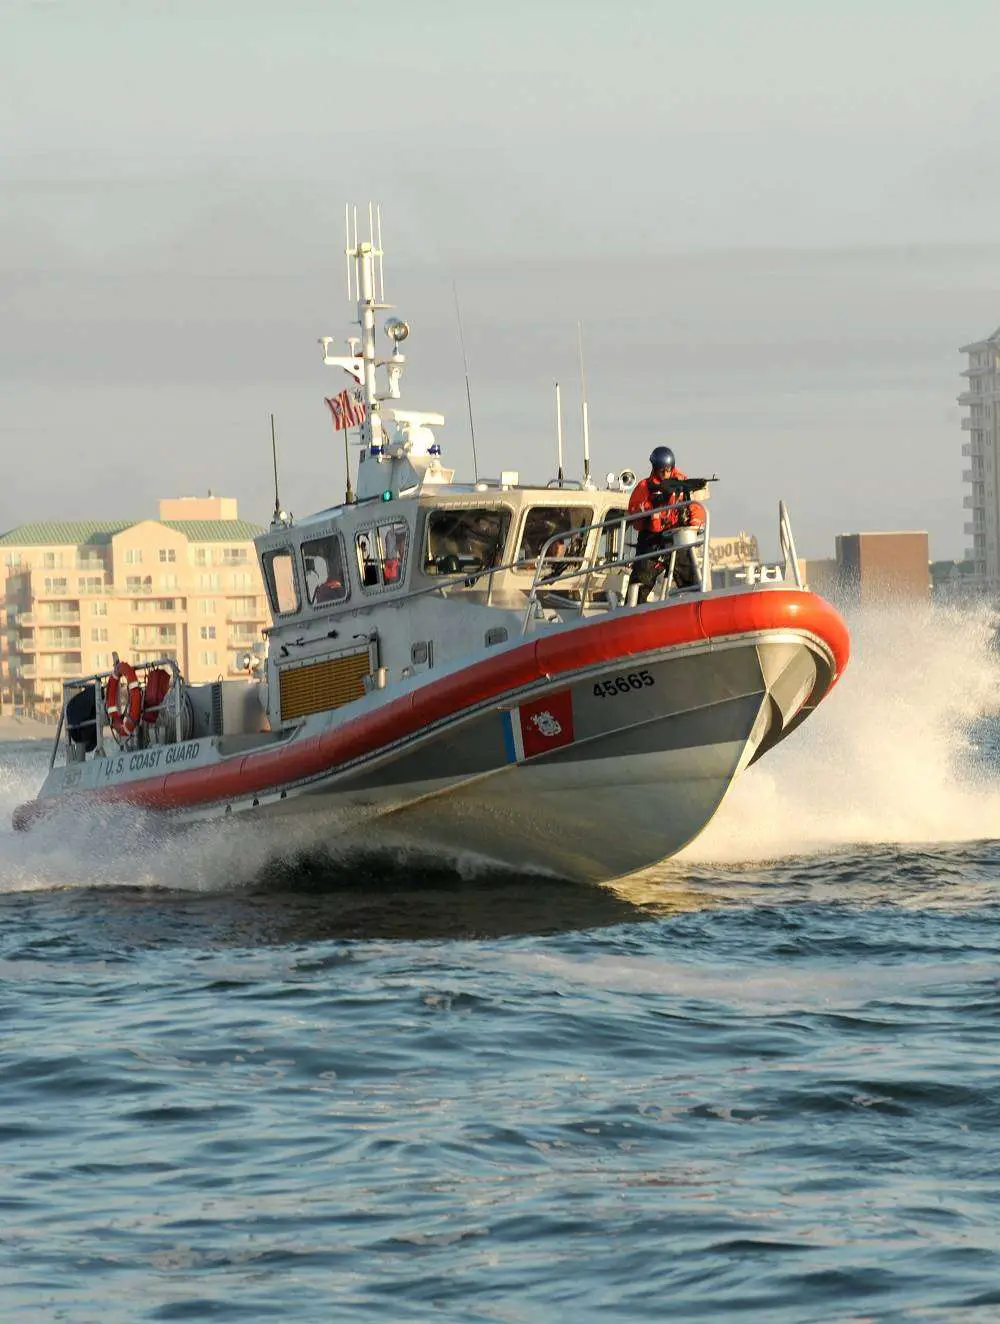 Coast Guard Saves 2, Keeps Vessel Afloat